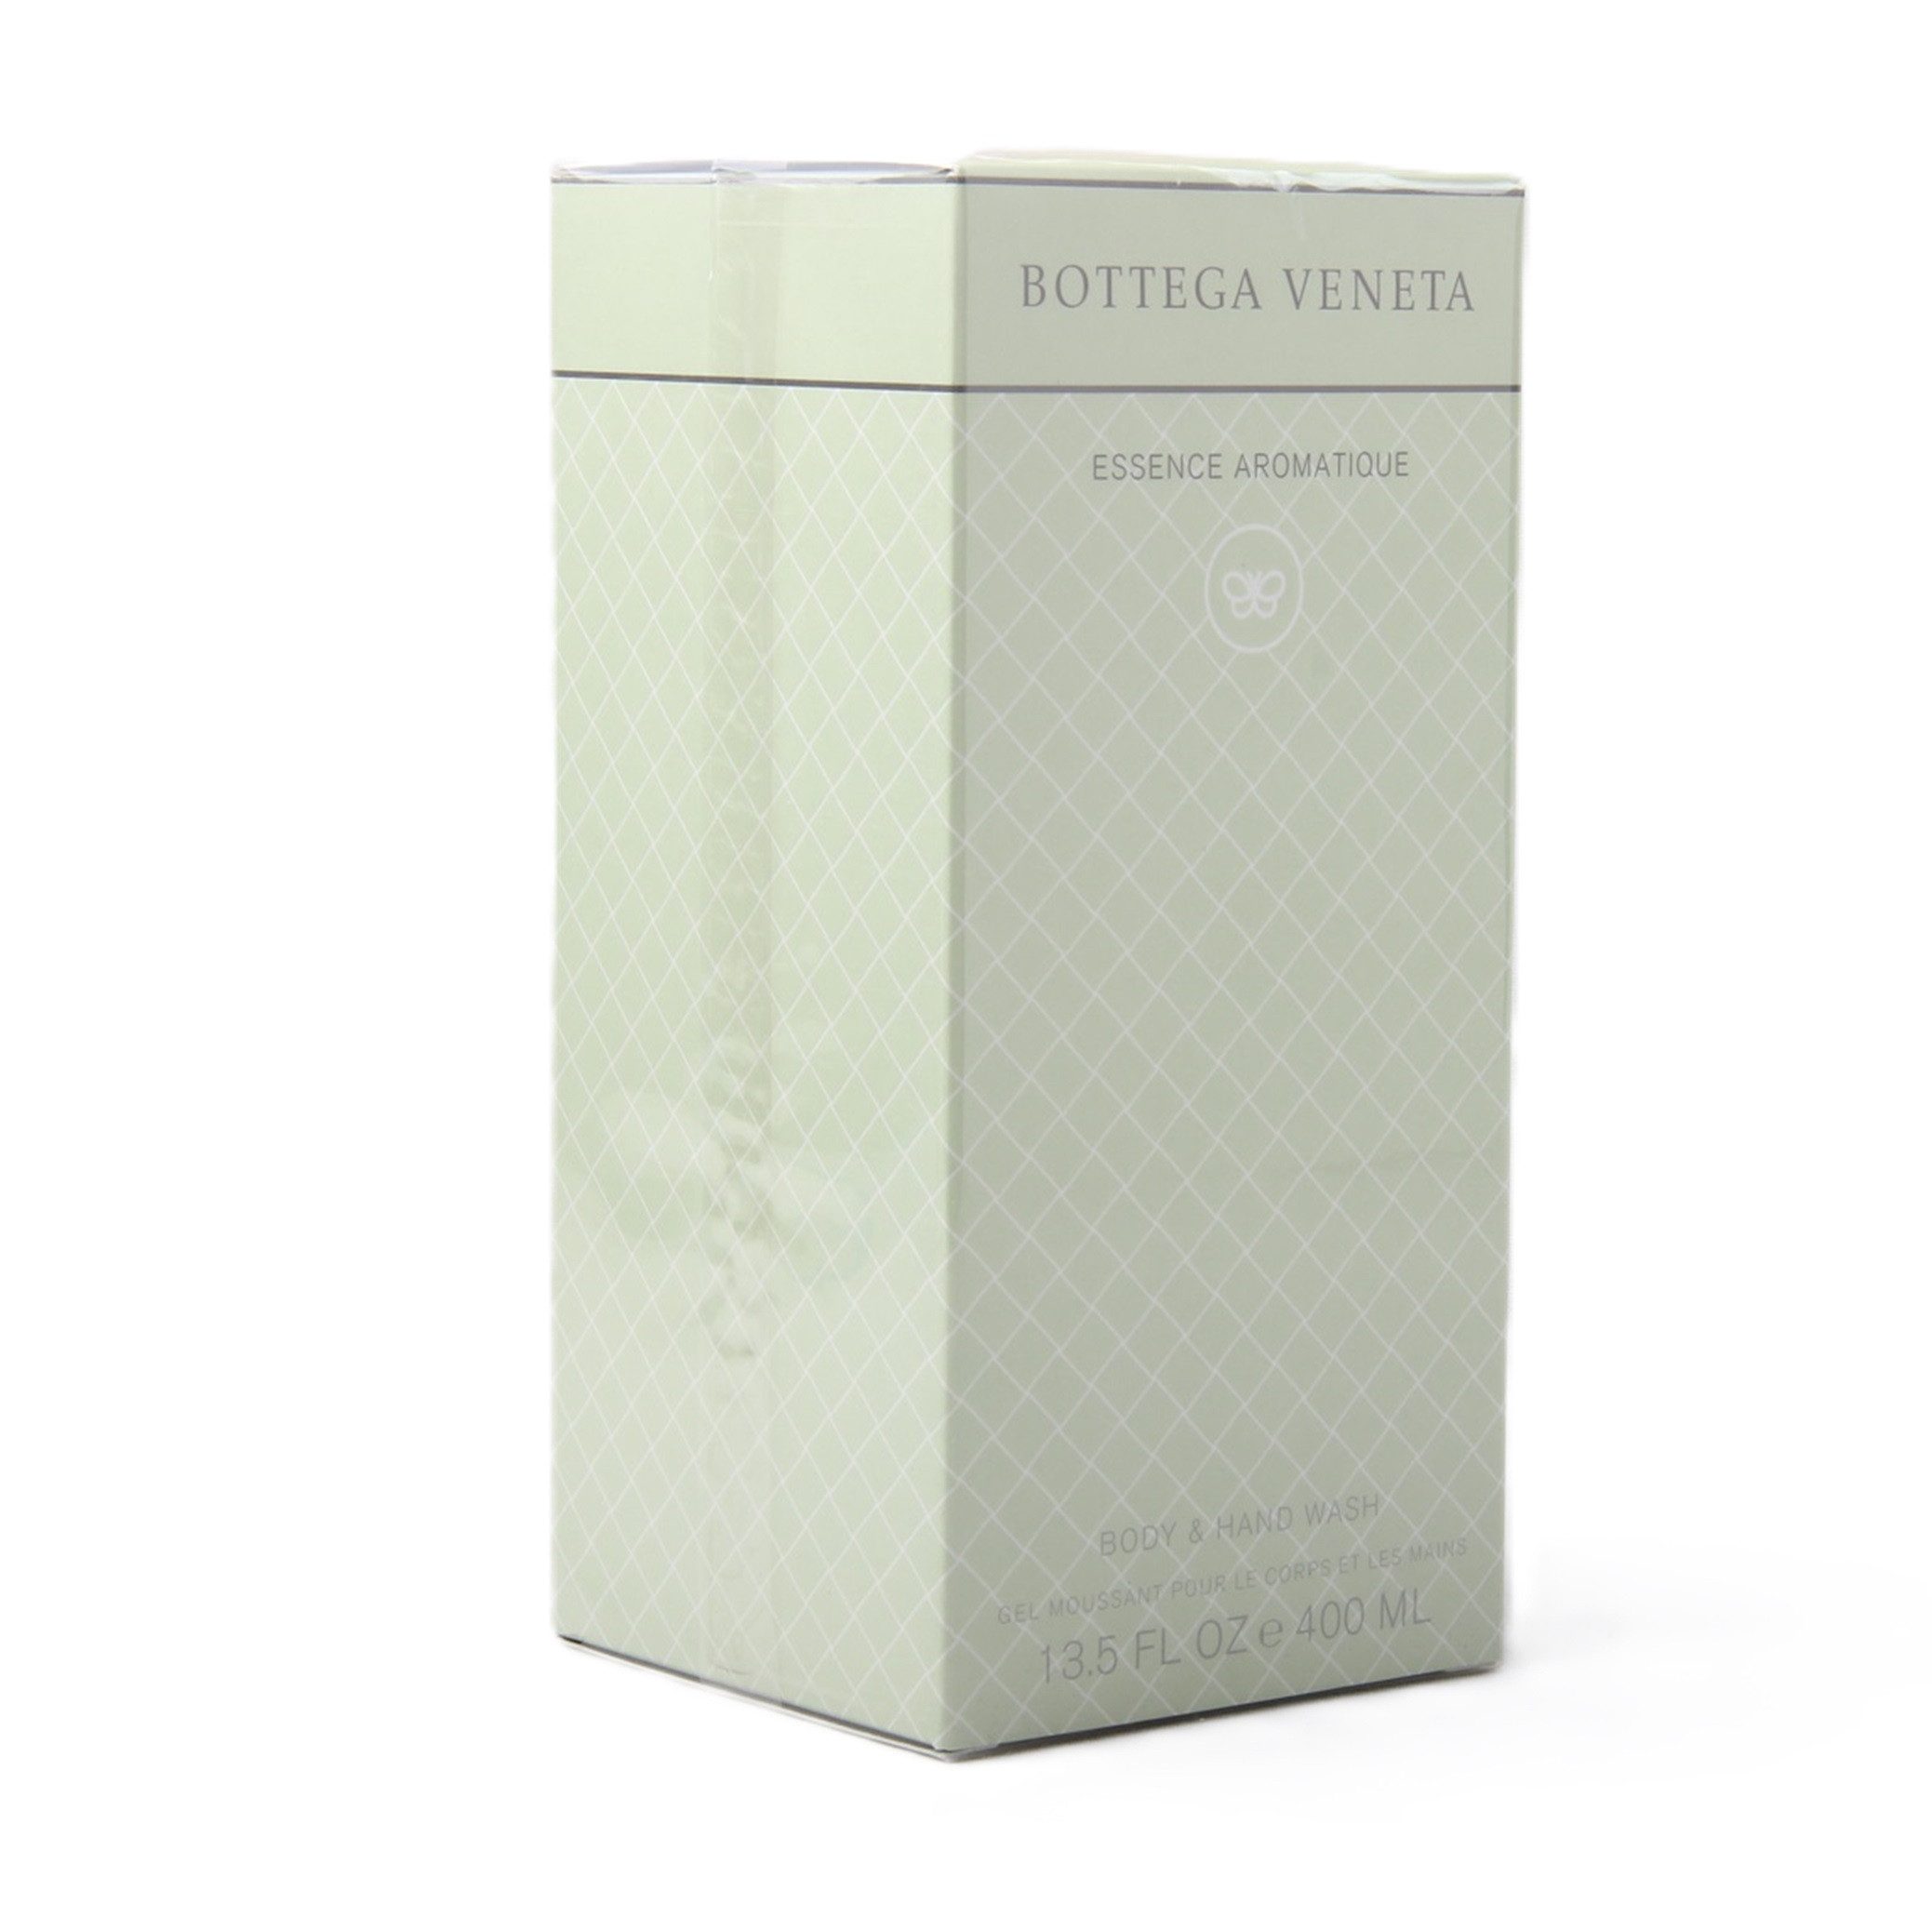 BOTTEGA VENETA Duschpflege Bottega Veneta Essence Aromatique Body & Hand Wash / Shower Gel 400ml